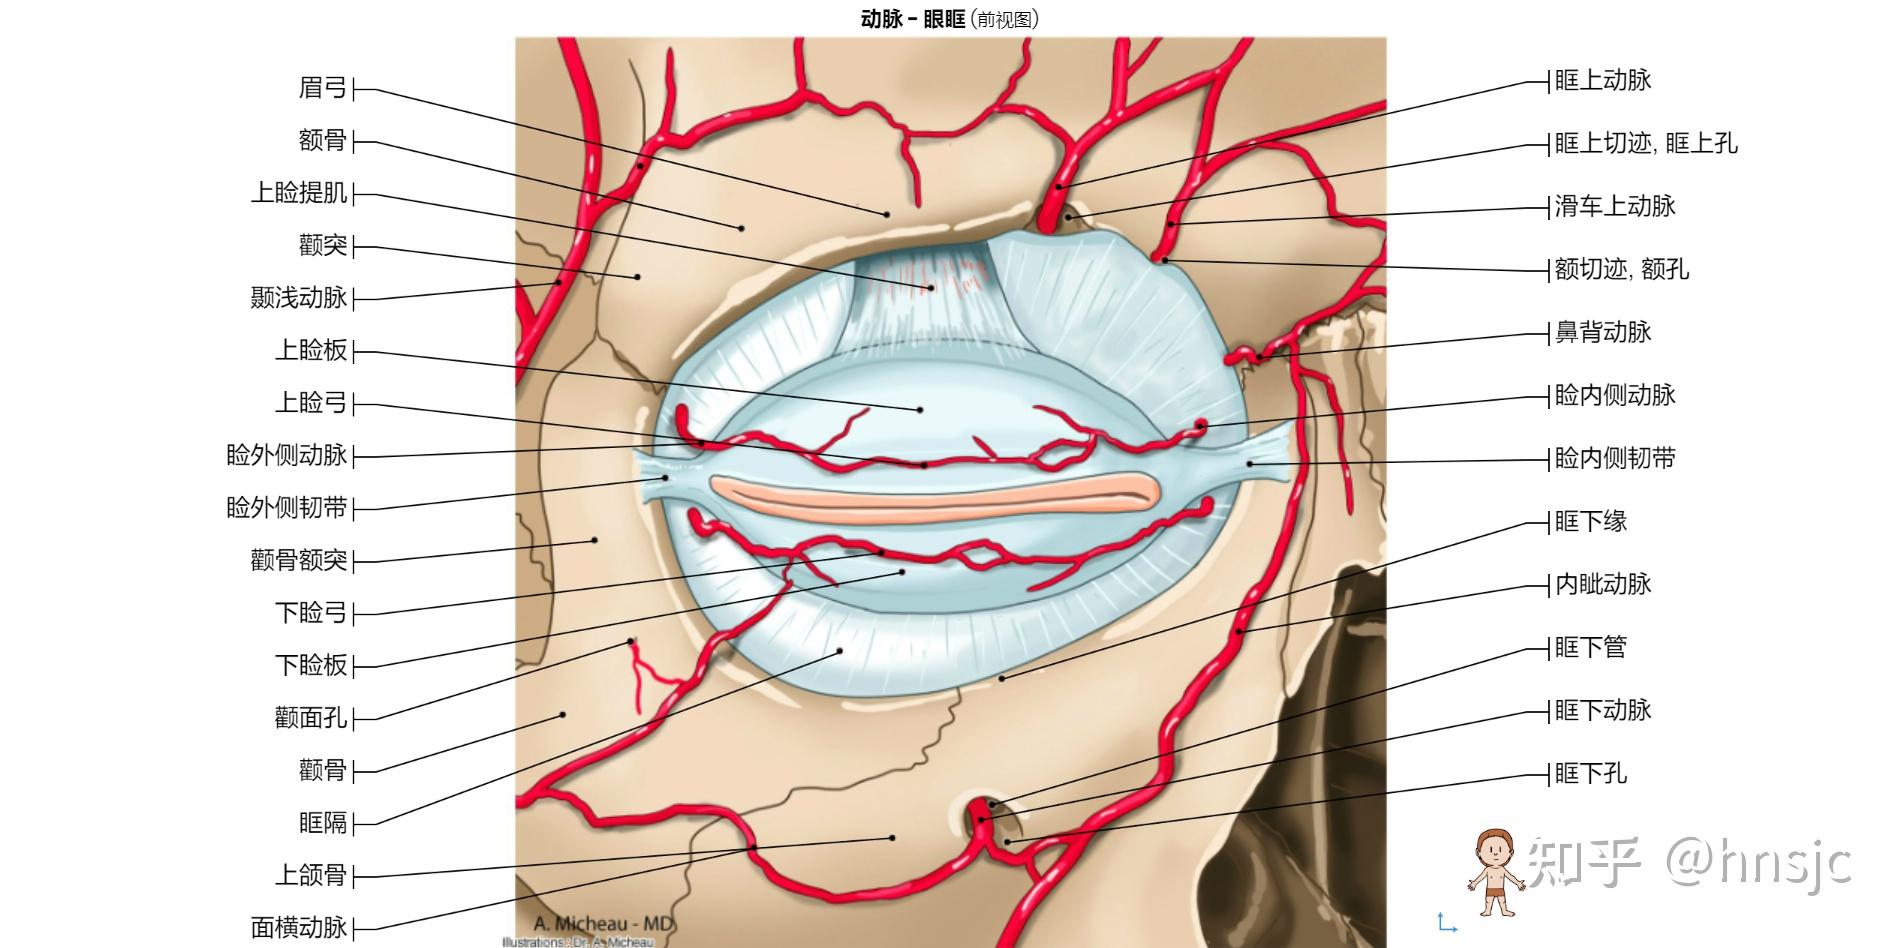 脑血管解剖学习笔记第18期：颧眶动脉 - 脑医汇 - 神外资讯 - 神介资讯